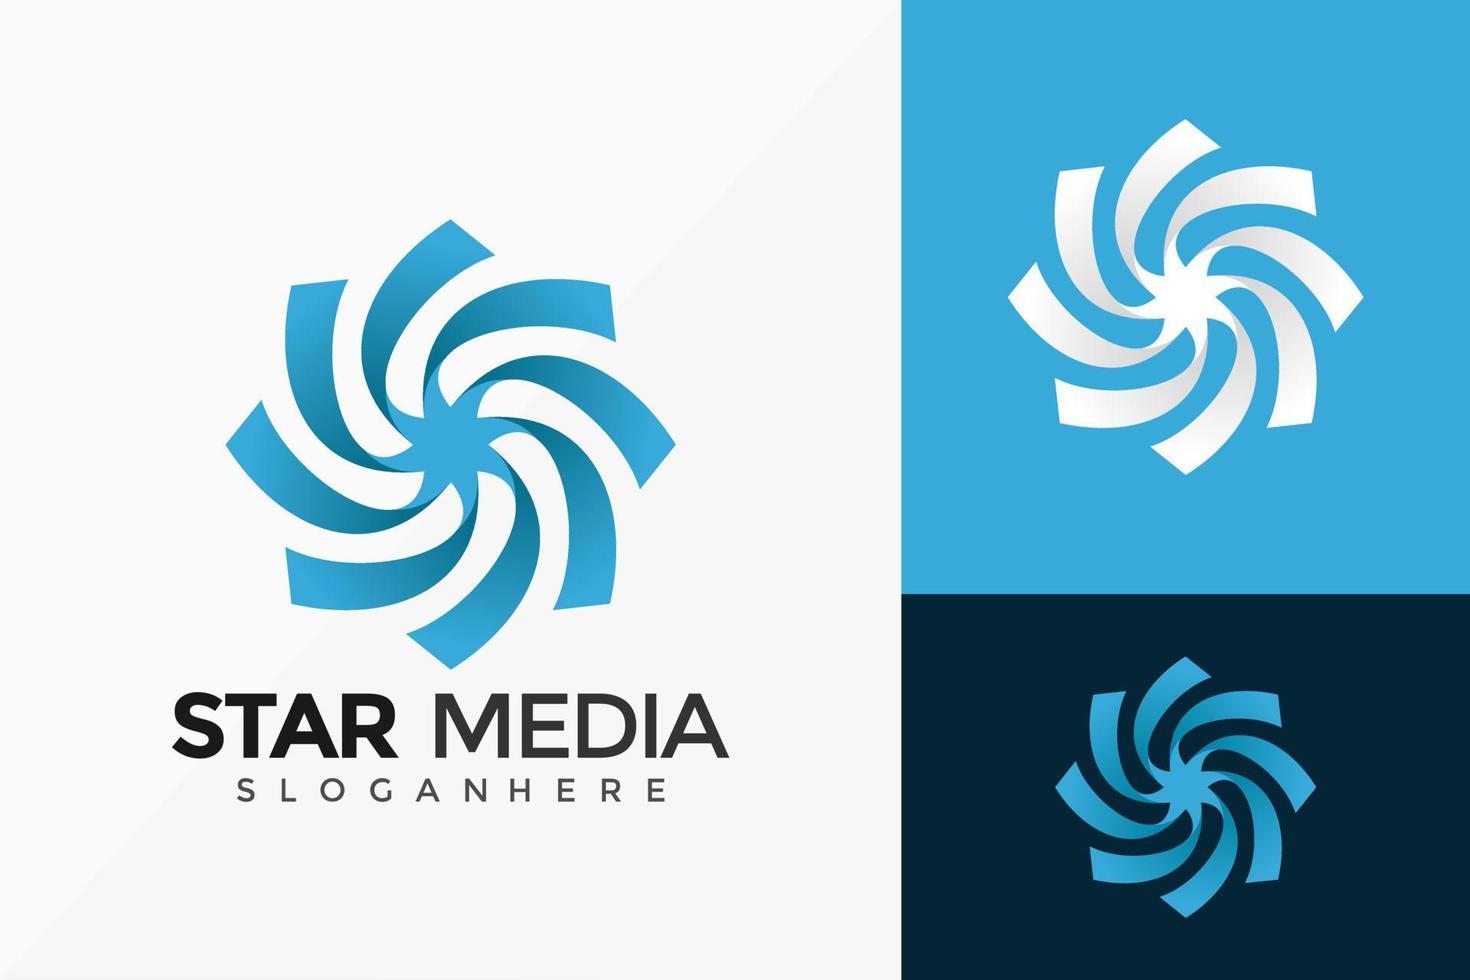 blauwe ster media modern logo vector ontwerp. abstract embleem, ontwerpen concept, logo's, logo element voor sjabloon.